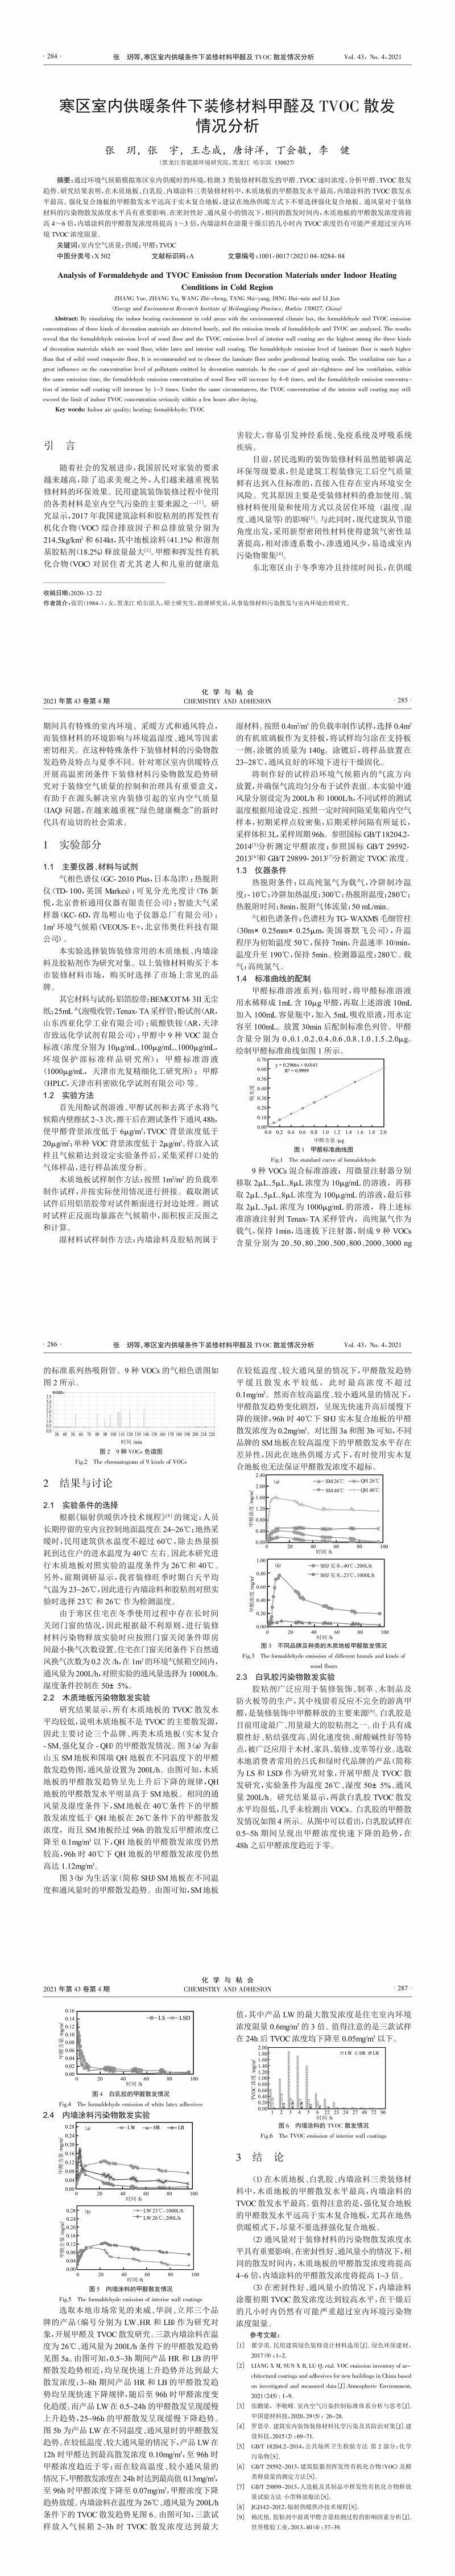 寒区室内供暖条件下装修材料甲醛及TVOC散发情况分析_张玥.png